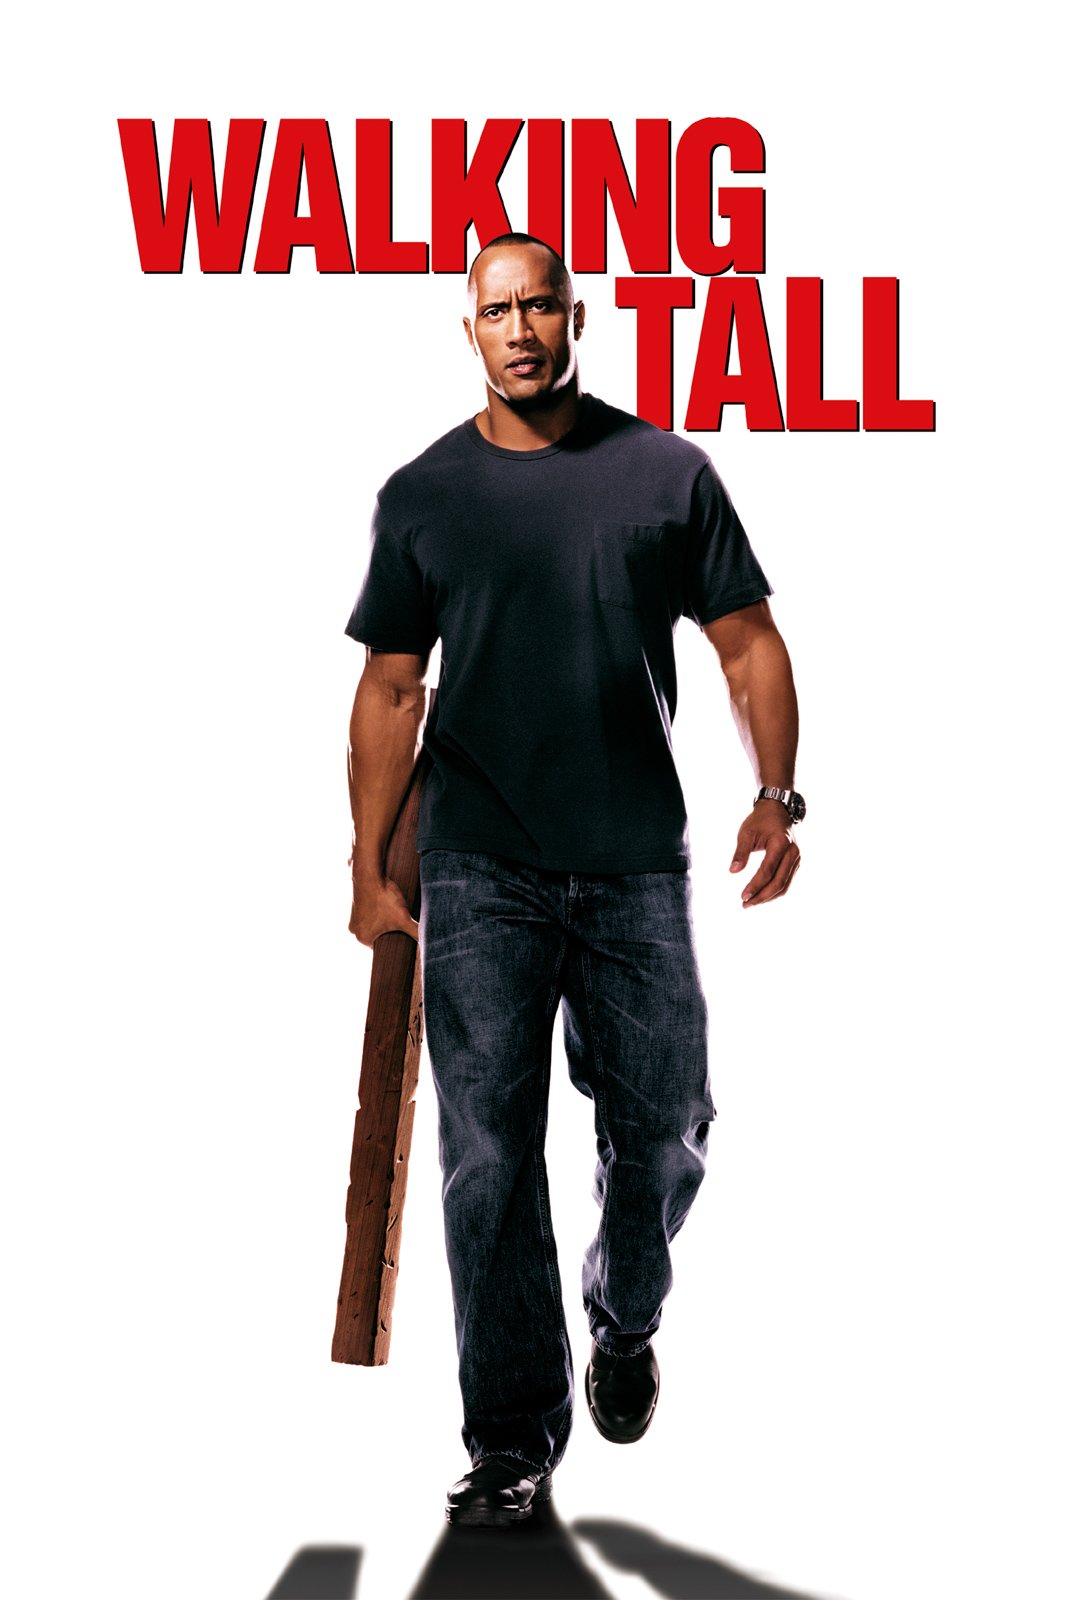 Walking Tall